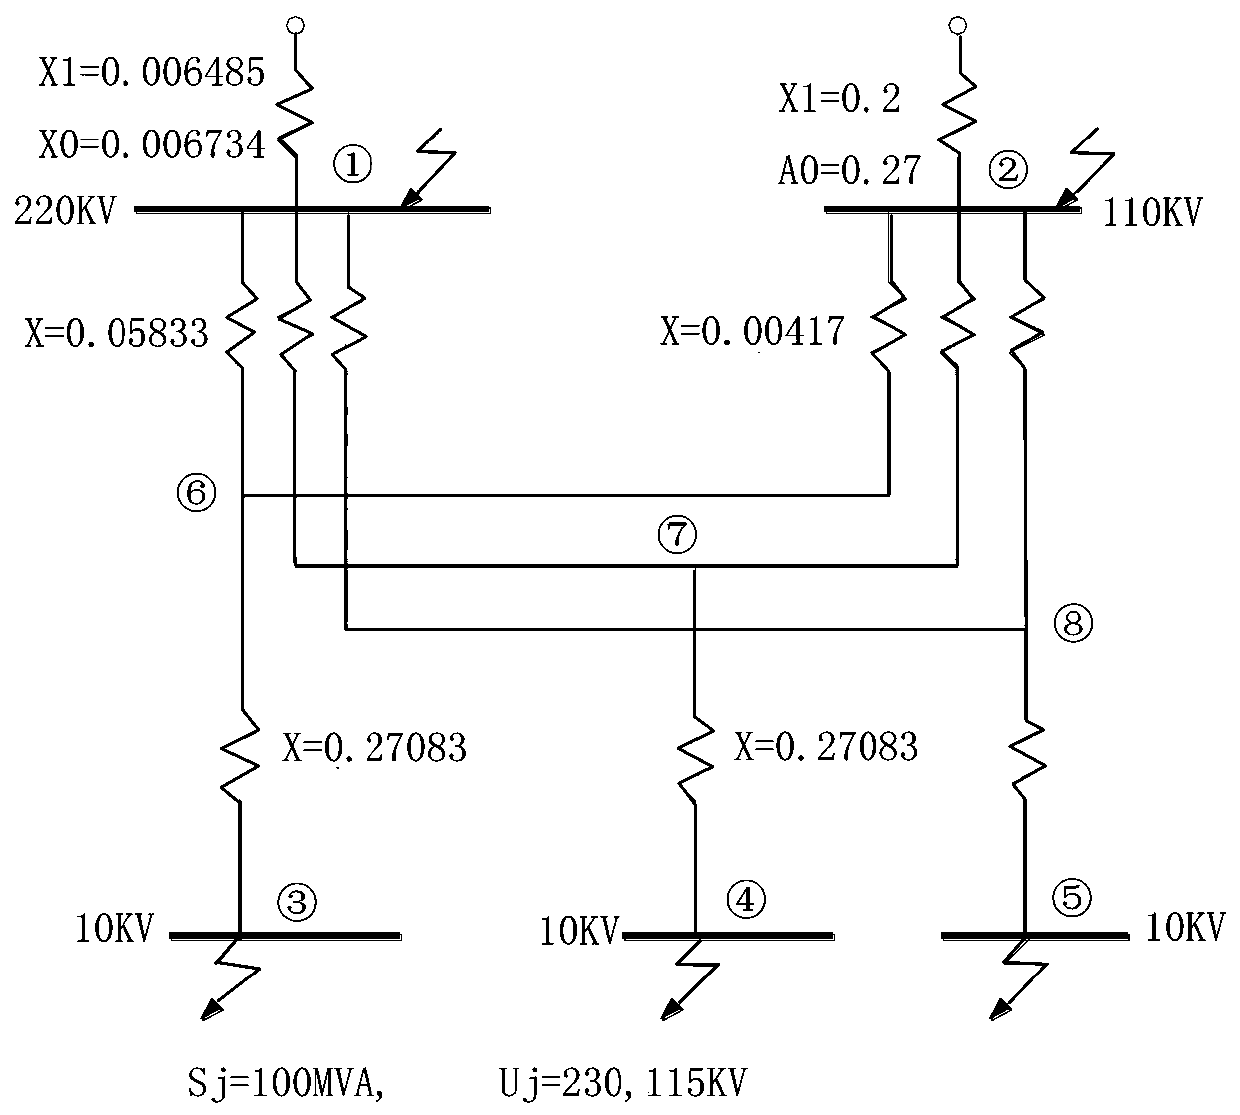 Substation short-circuit current calculation system and method based on 3D design platform